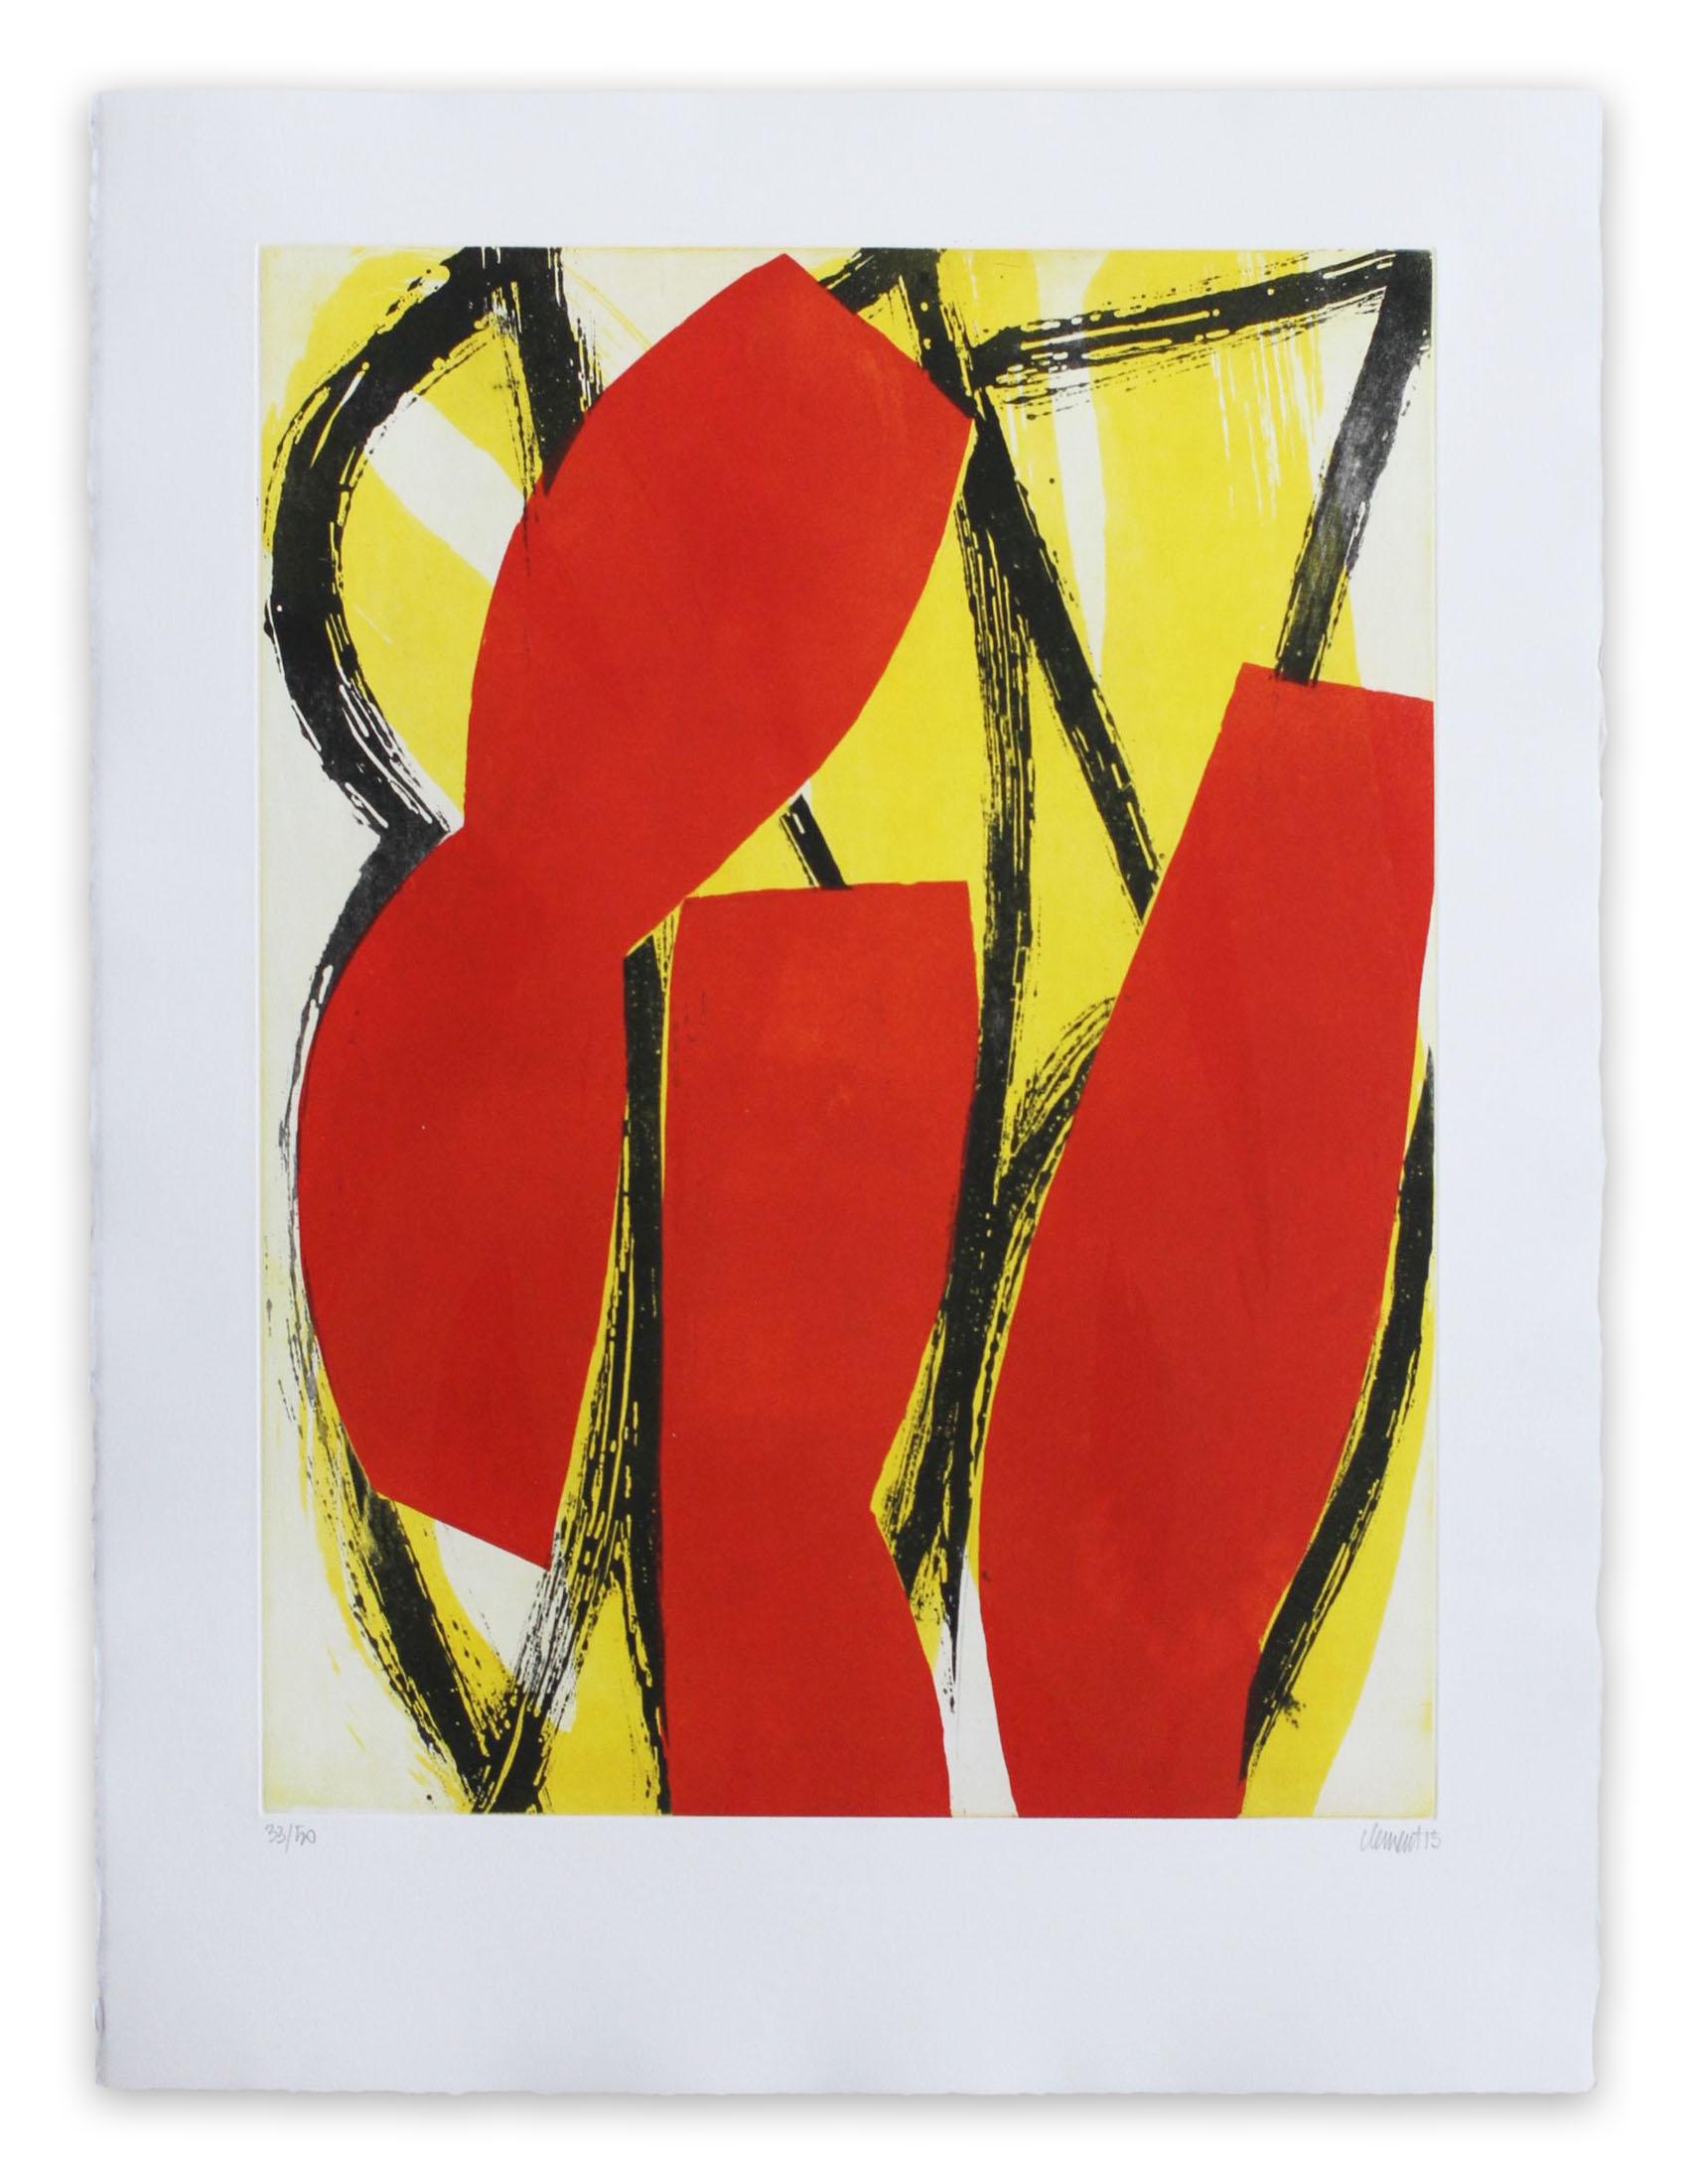 Alain Clément Abstract Print - 15AV3G-2015 (Abstract print)